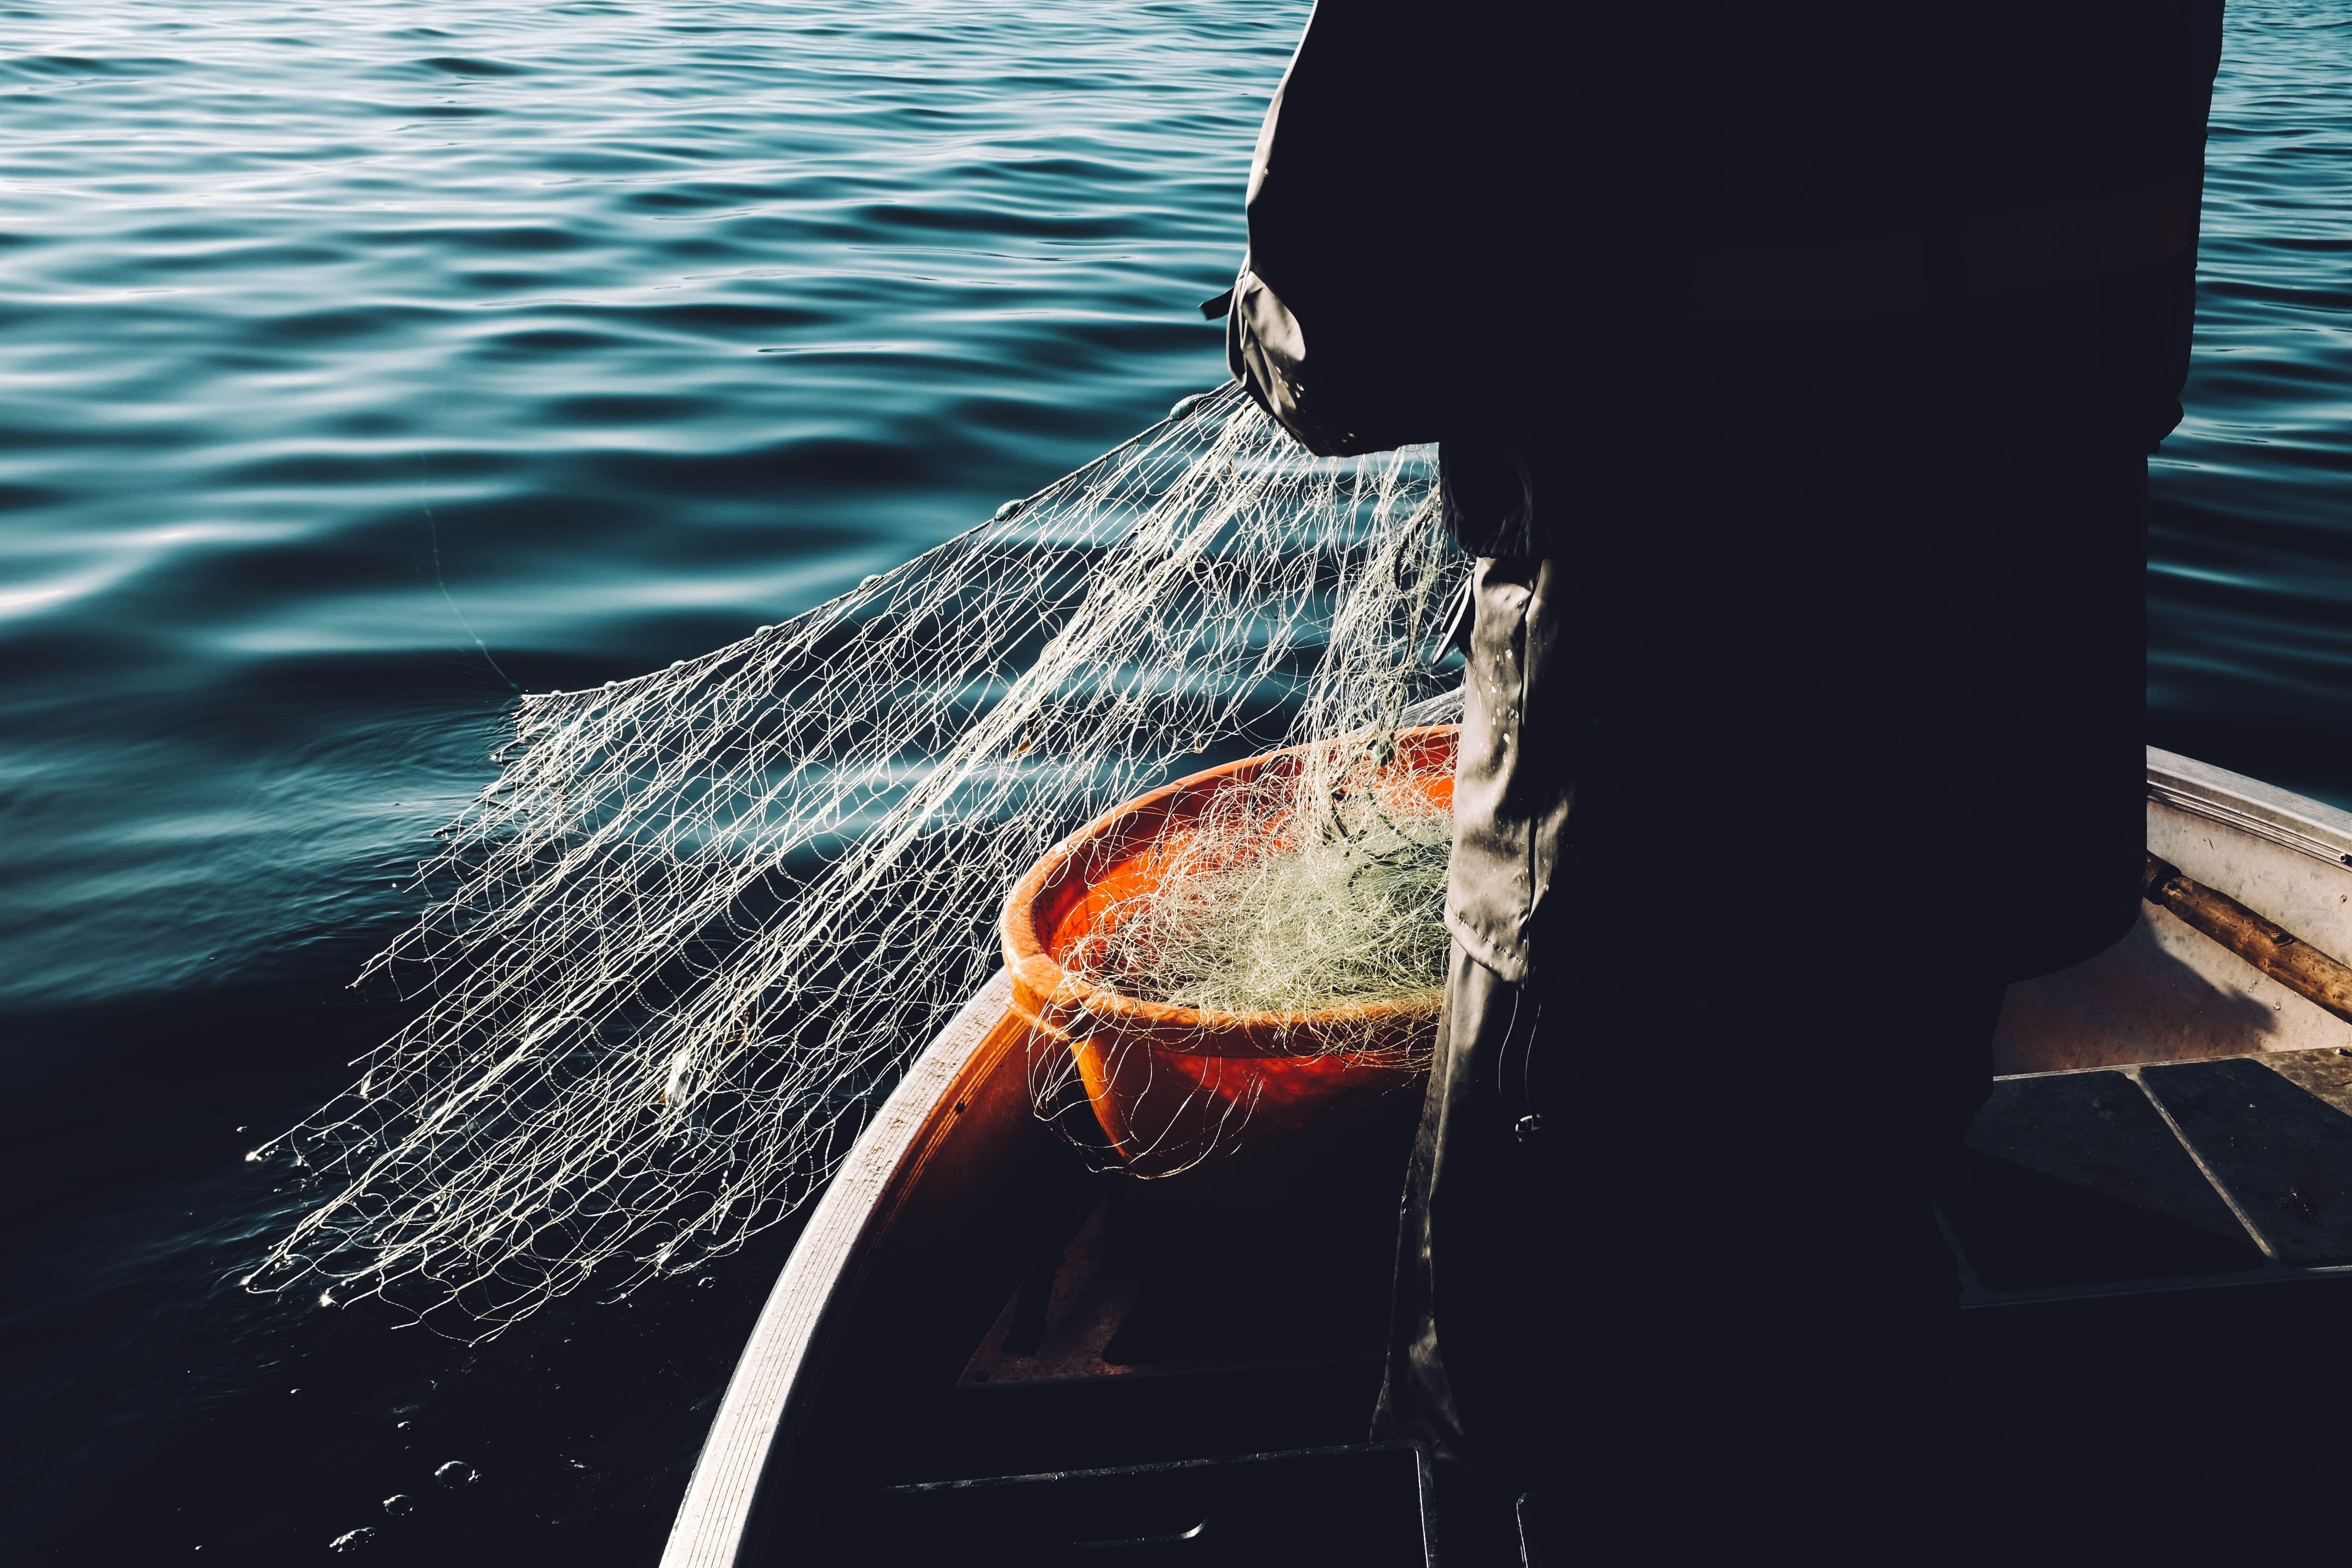 Halász húzza ki a hálóját a vízből